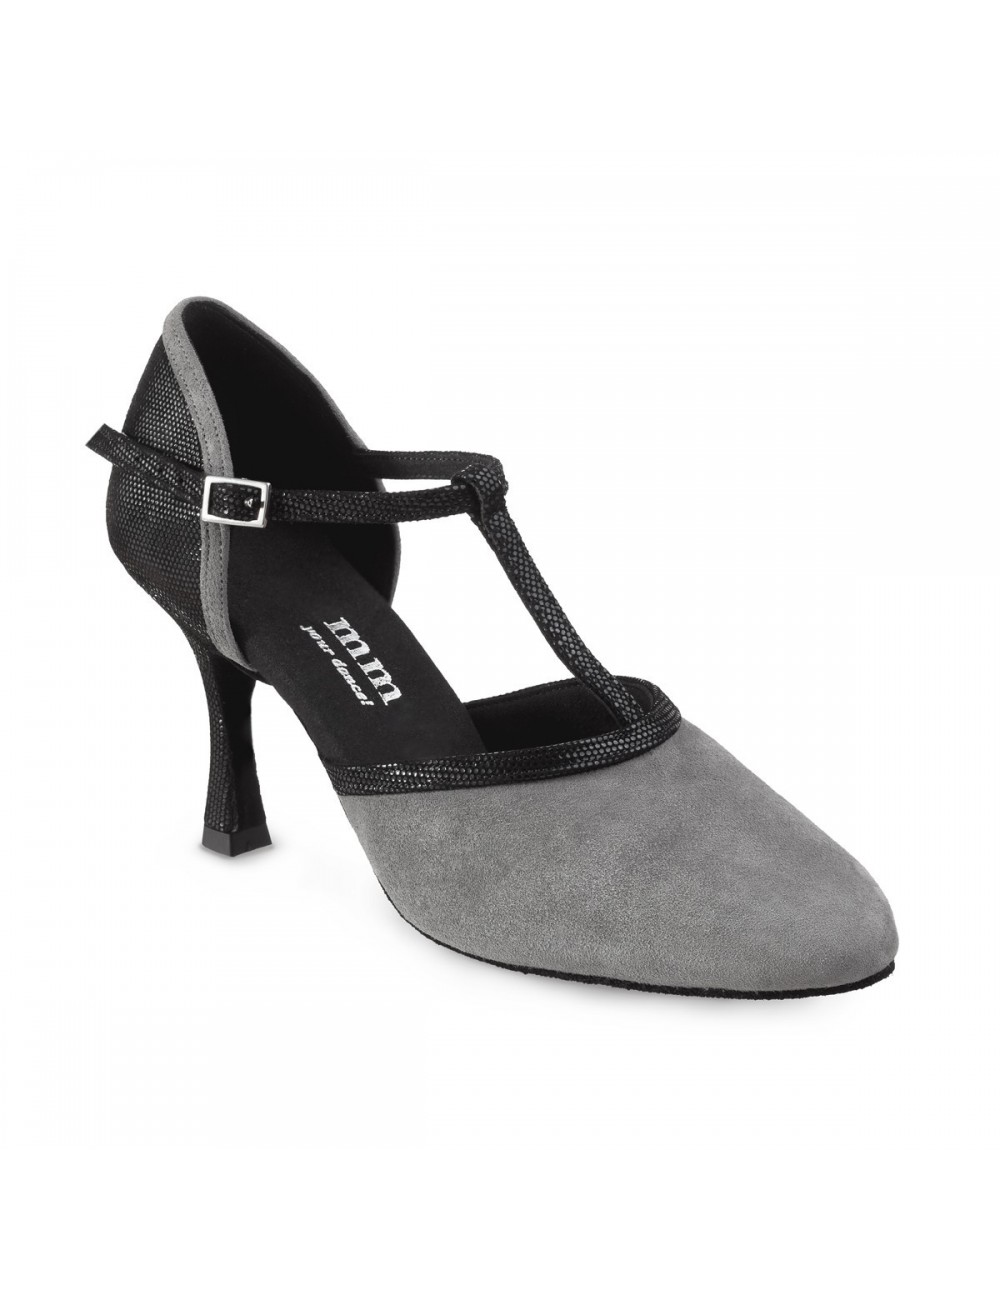 https://www.carolmartinezdanceshoes.com/701-large_default/elegantes-zapatos-de-baile-cerrados-senora-en-piel.jpg